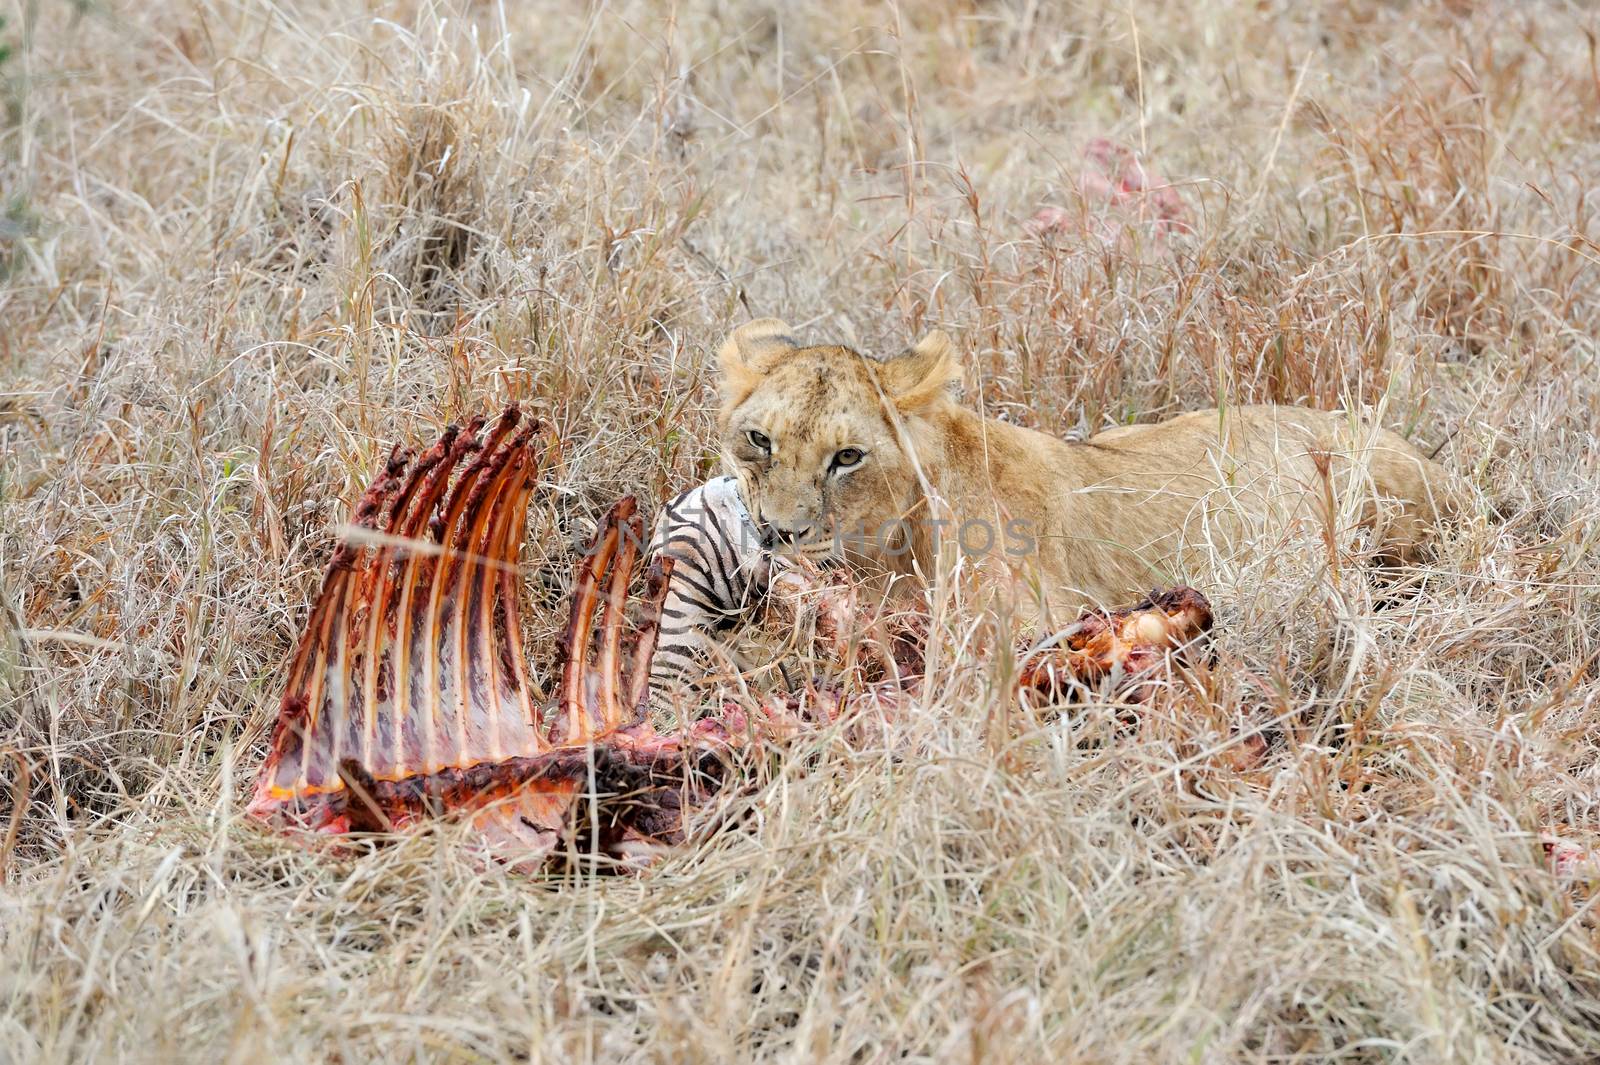 Lions eating a zebra by byrdyak